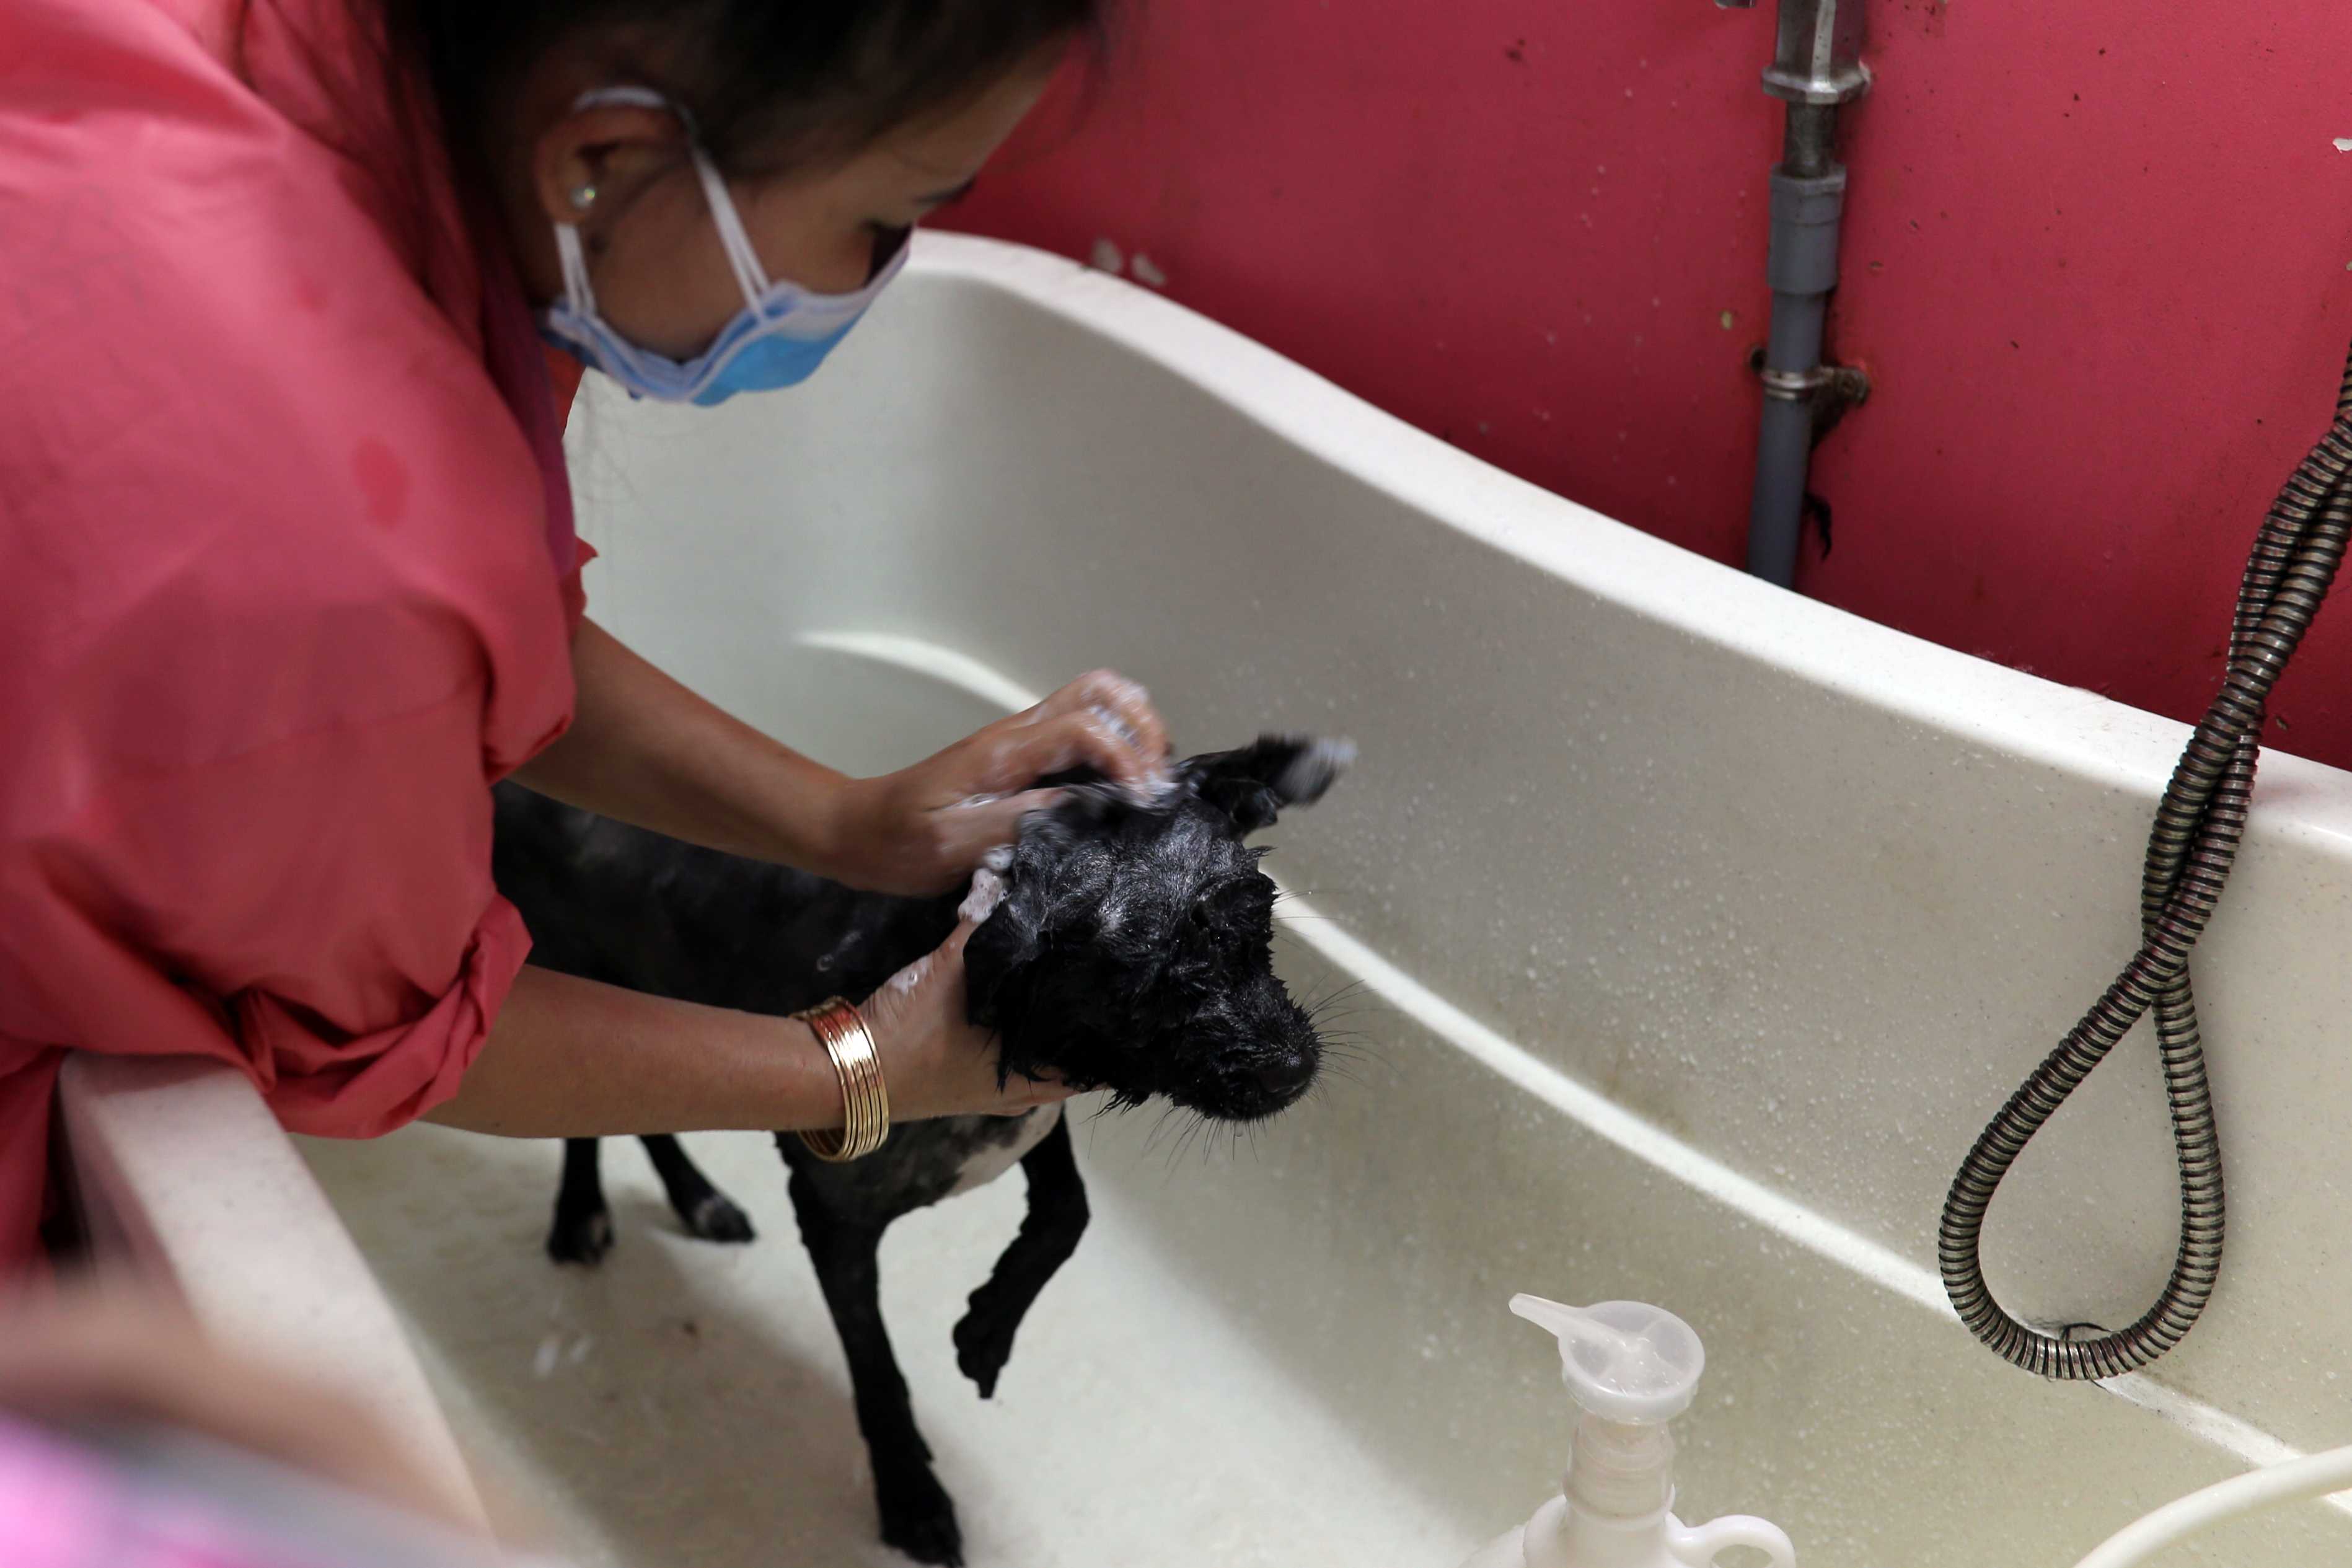 Sau khi cạo lông, bé được tắm bằng sữa tắm đặc biệt dành riêng cho chó. Nhân viên cho biết tắm cho chó cũng cần có kỹ năng, xoa từ đầu xuống và khi tắm phải vừa trò chuyện, vừa massage để các bé được thư giãn, thoải mái. Đặc biệt mỗi nhân viên phải biết cách tắm để các bé không bị hôi